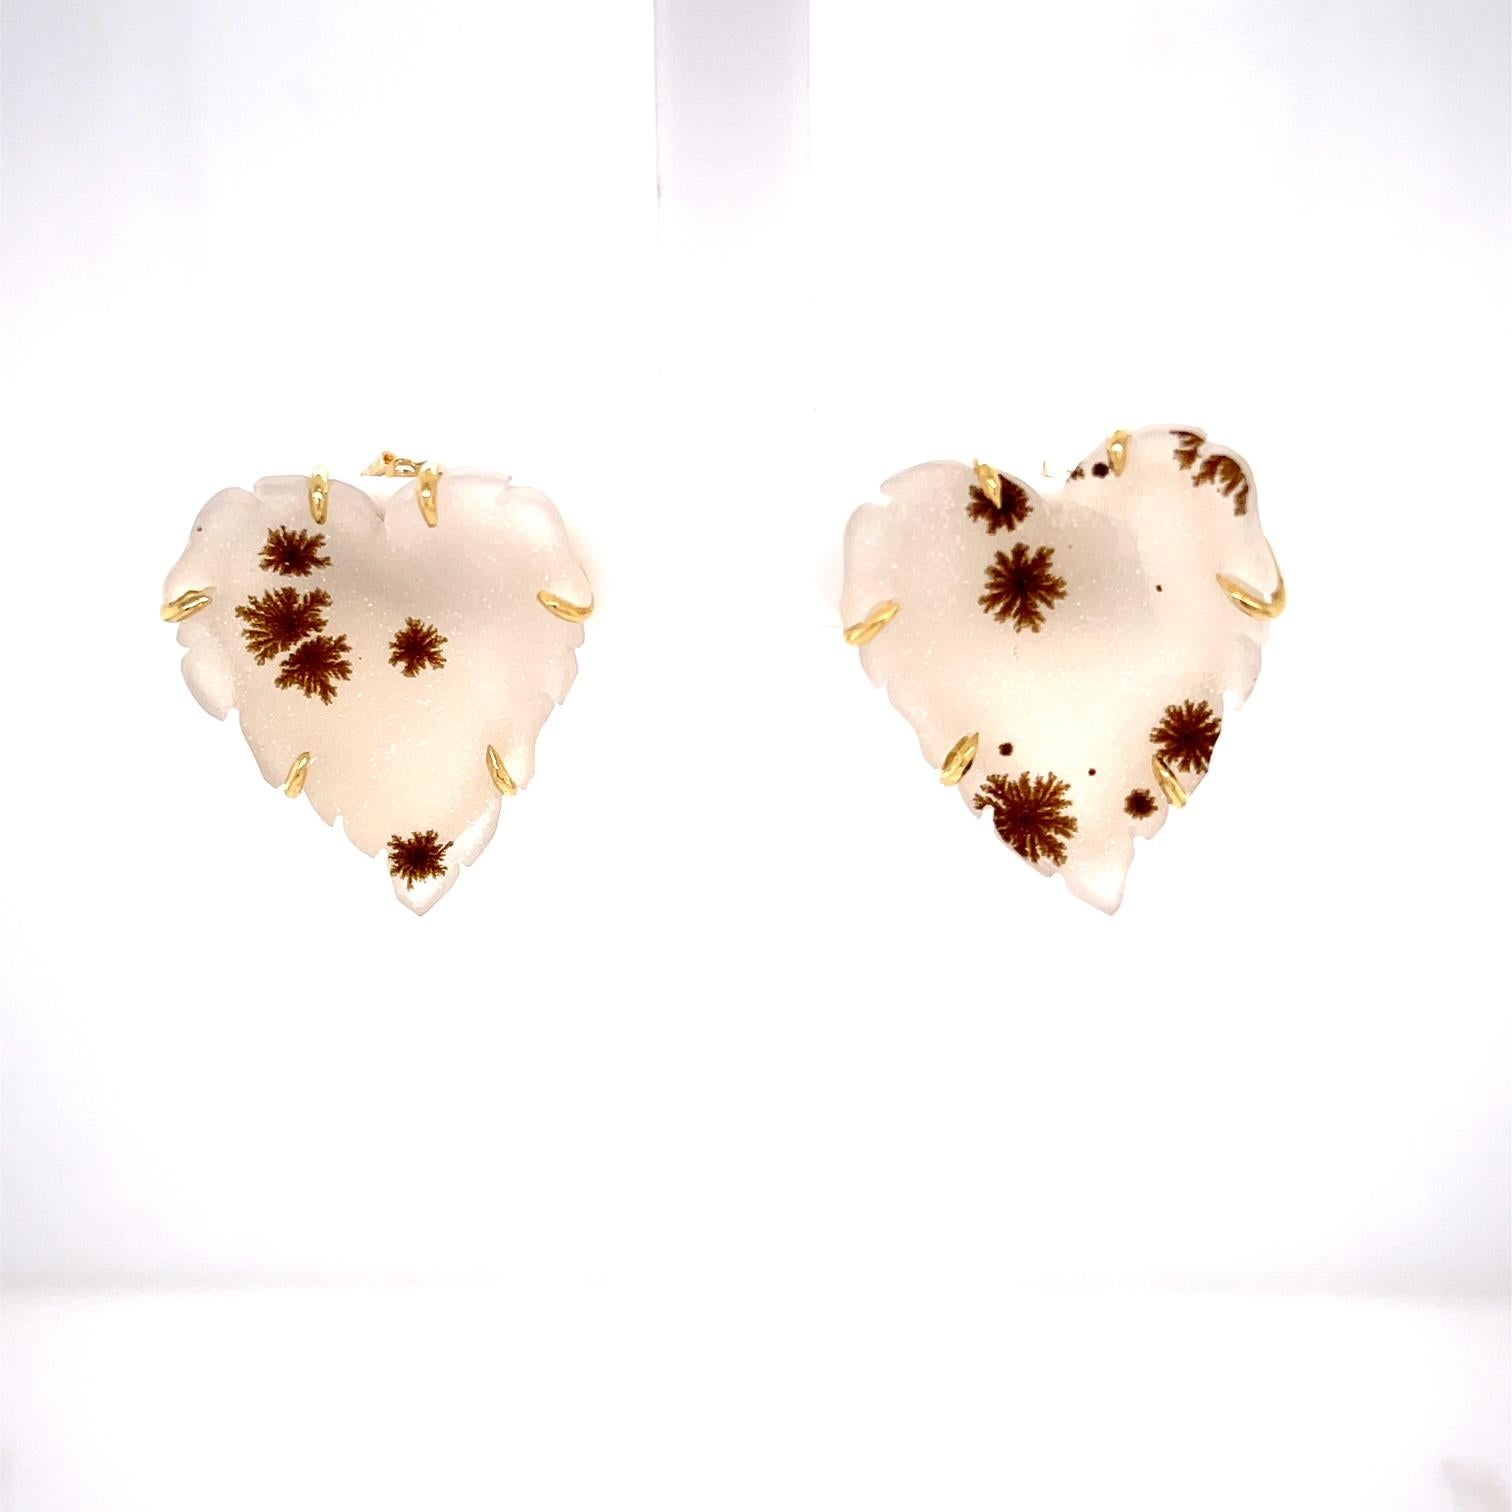 Une paire de clous d'oreilles en forme de cœur en druzy blanc et moucheté en or jaune 18k. Ces clous ont été fabriqués et conçus par llyn strong.